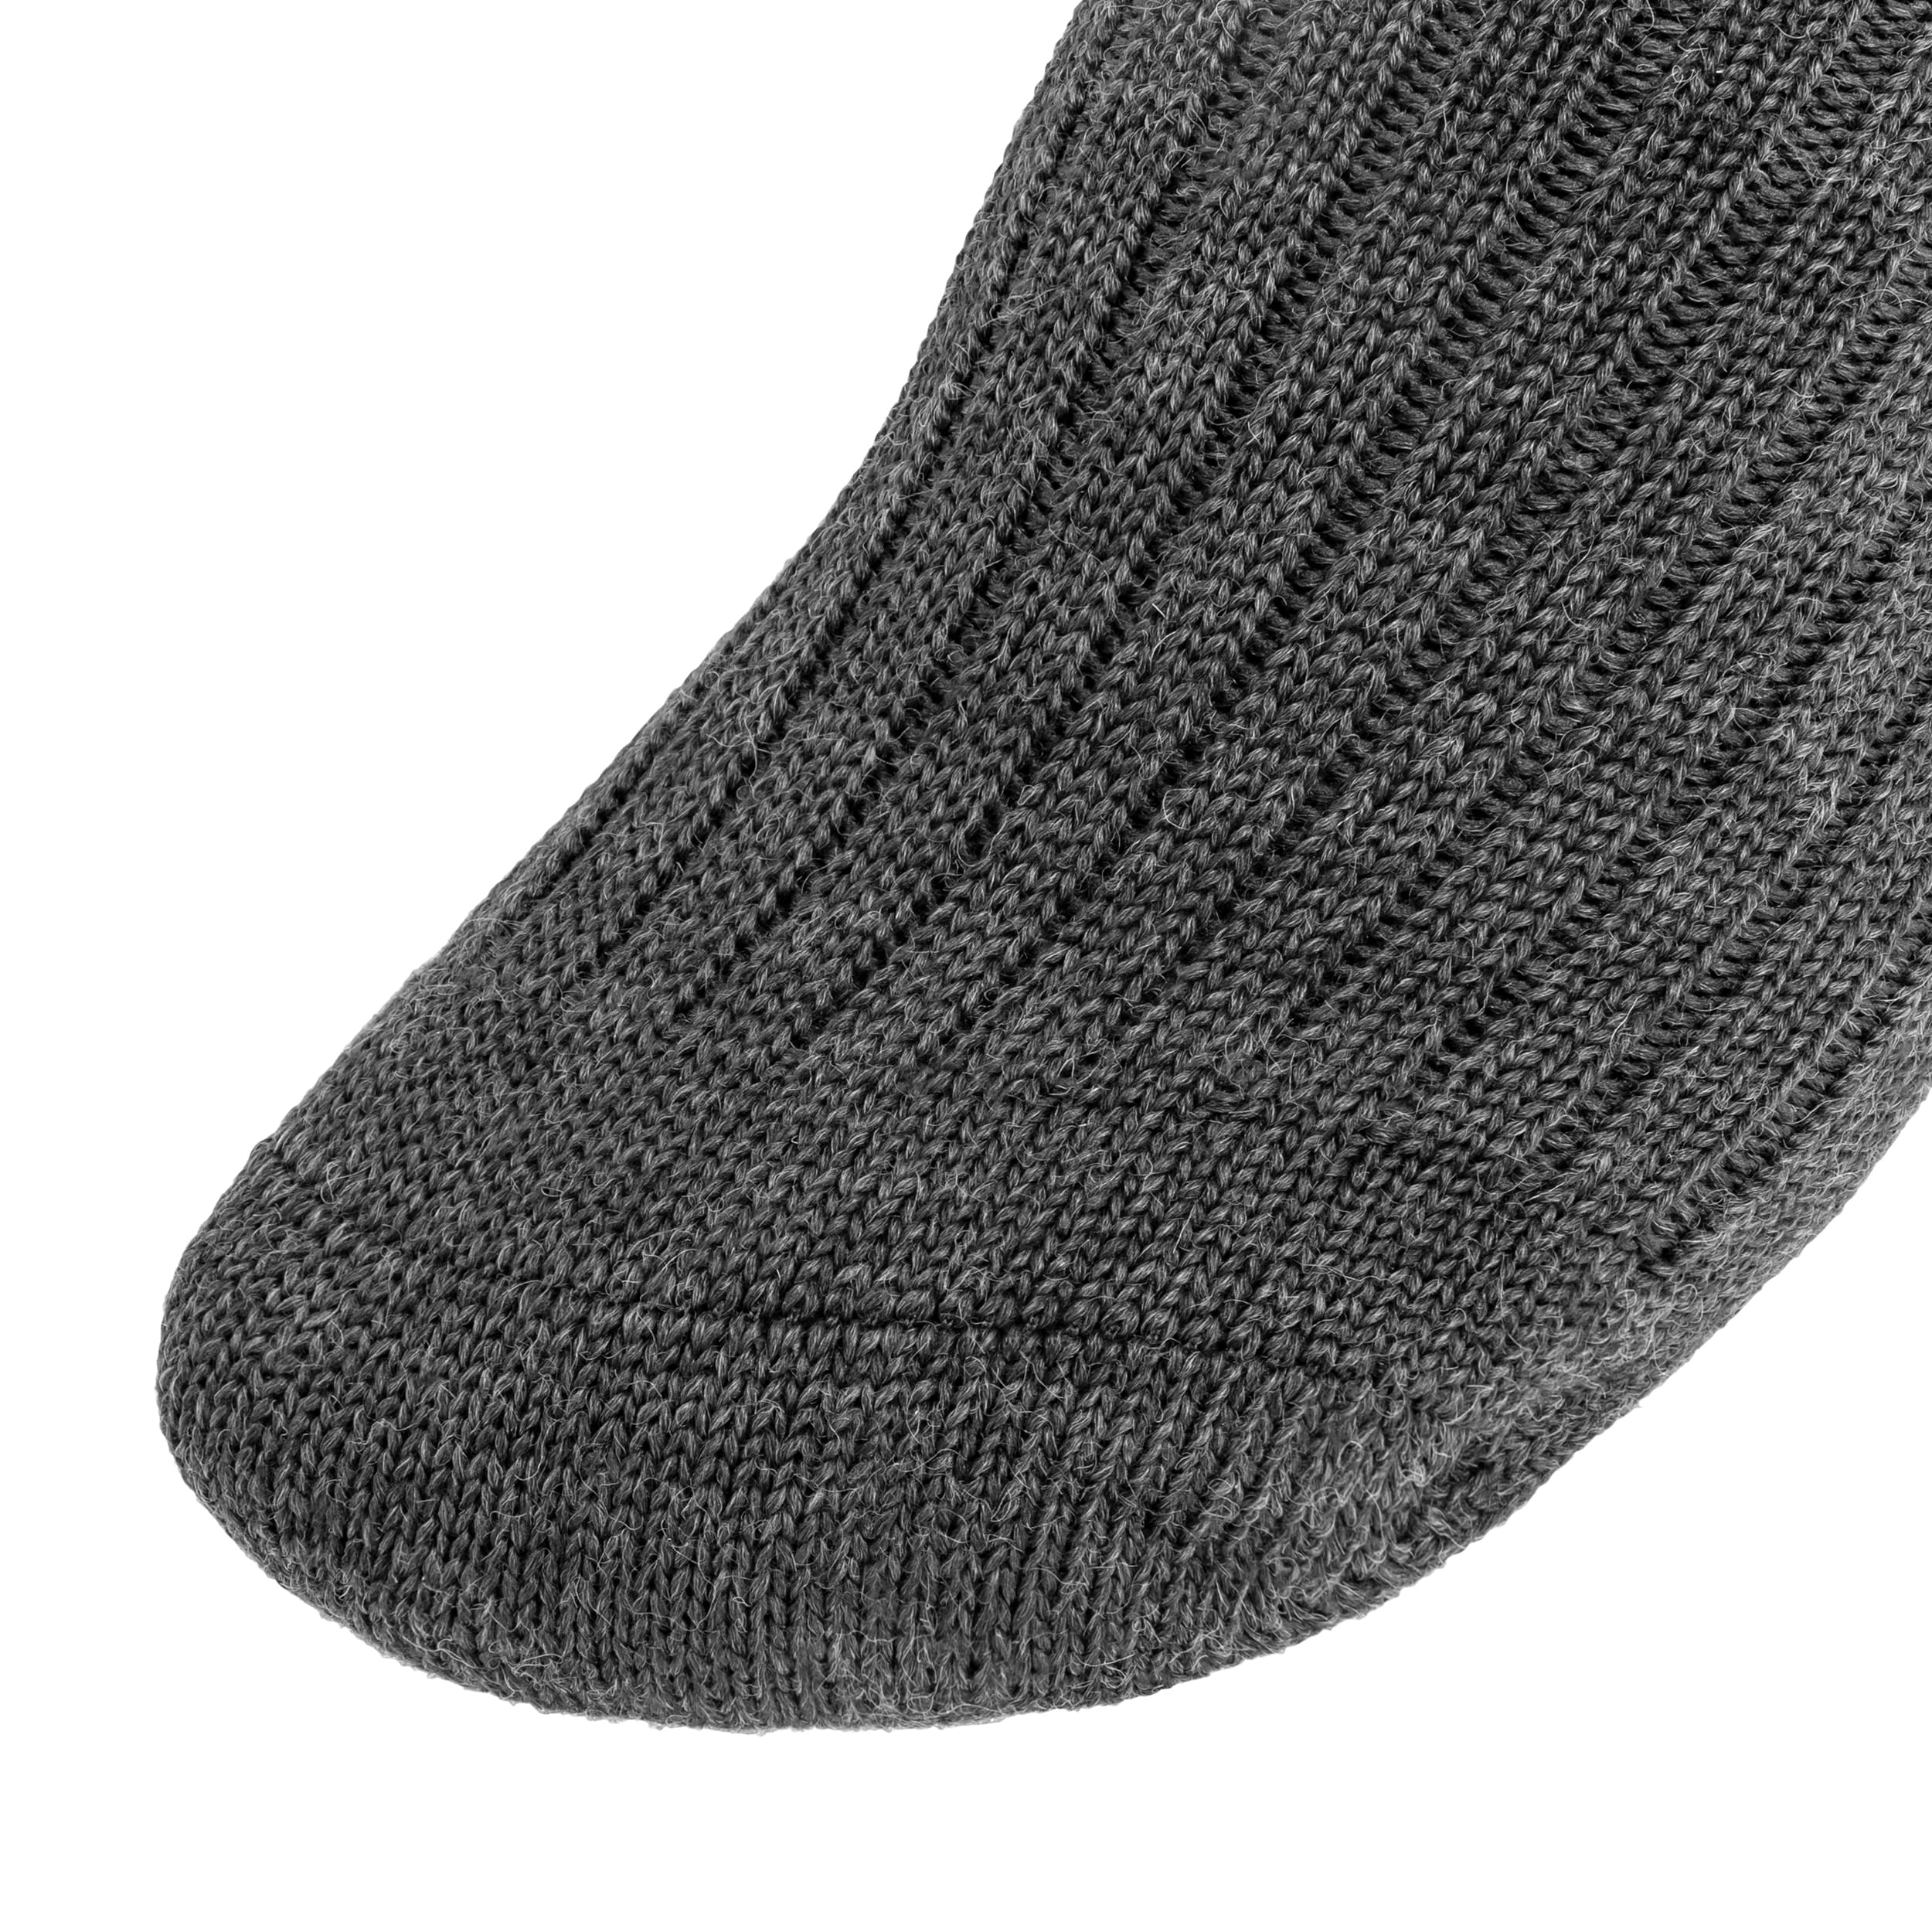 Skarpety Mil-Tec German Boot Socks - Grey